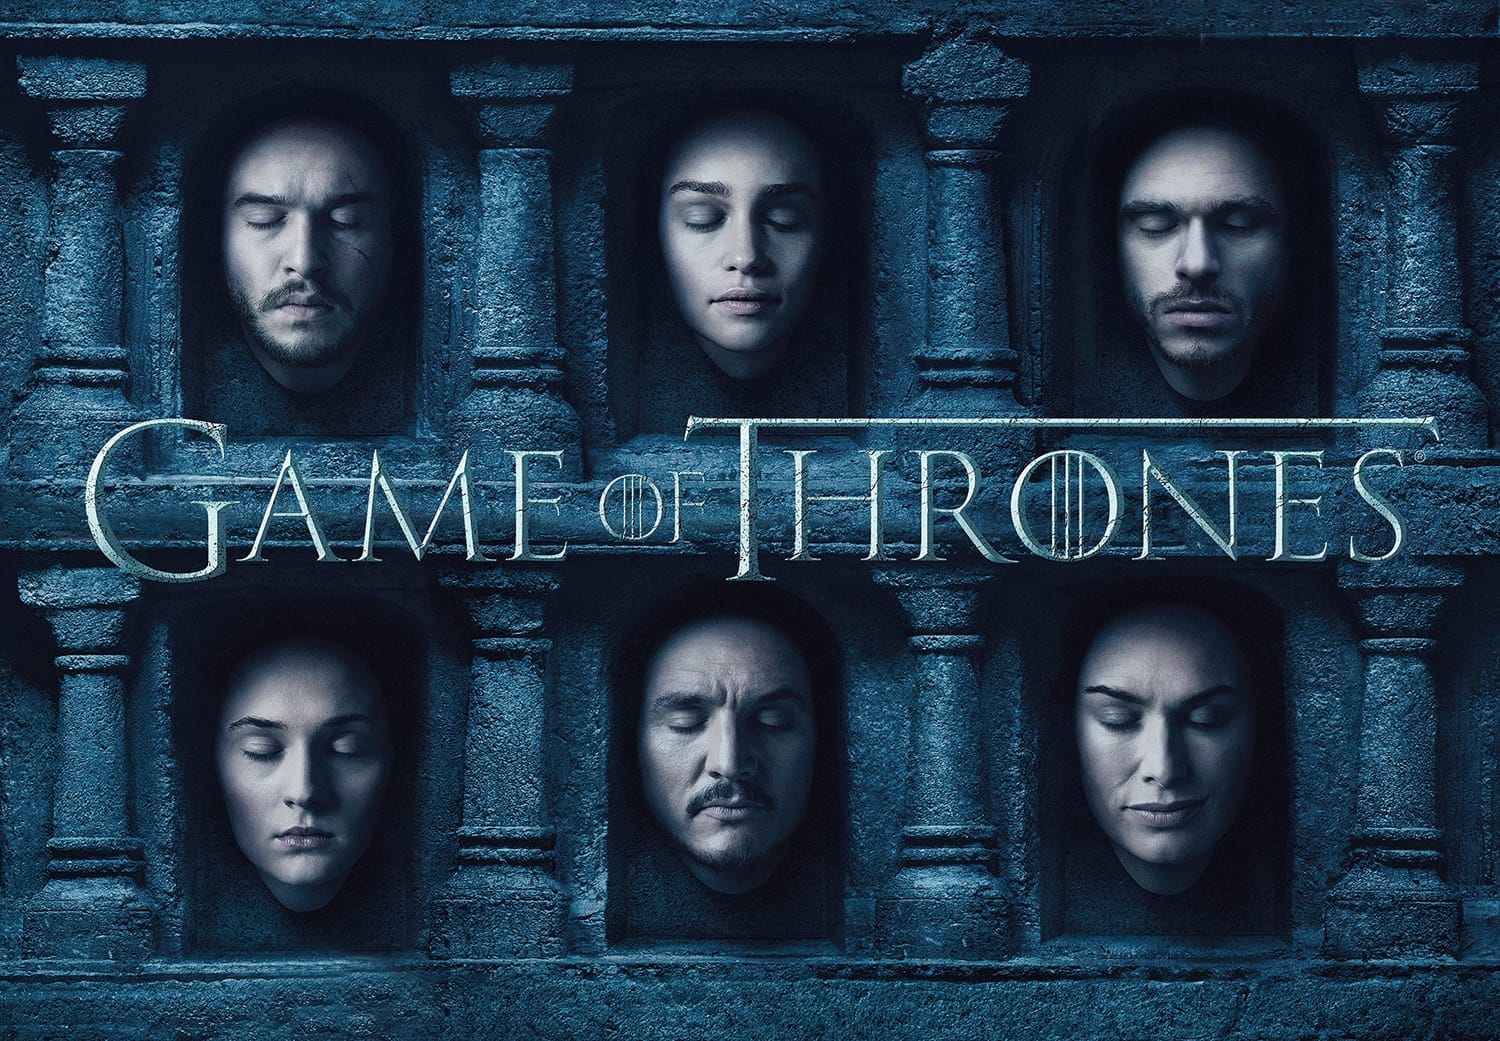 Endlich auch im Free-TV: Die 6. Staffel von "Game of Thrones" läuft ab dem 11. März auf RTL II, die siebte Staffel soll im Sommer auf Sky veröffentlicht werden.